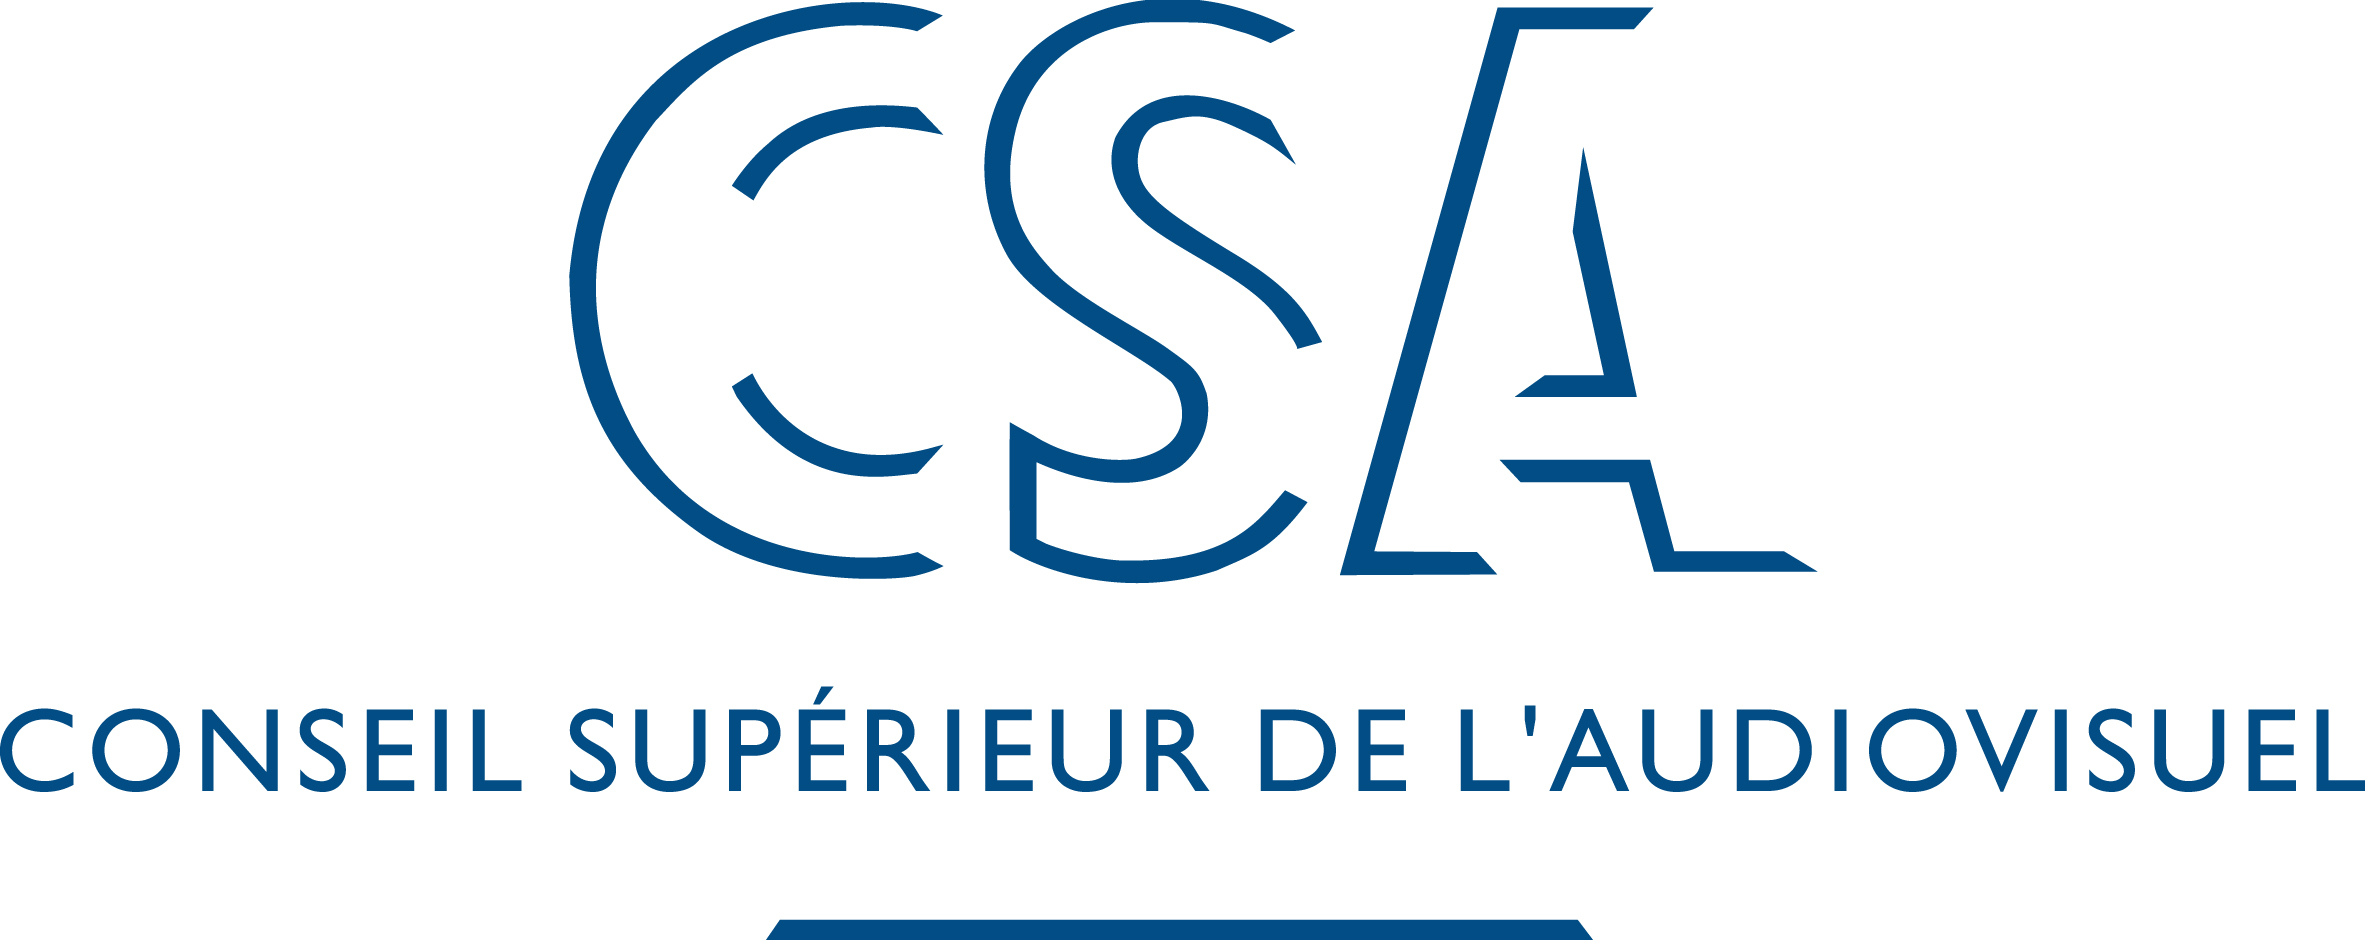 Régionales 2015 : la recommandation du CSA aux radios